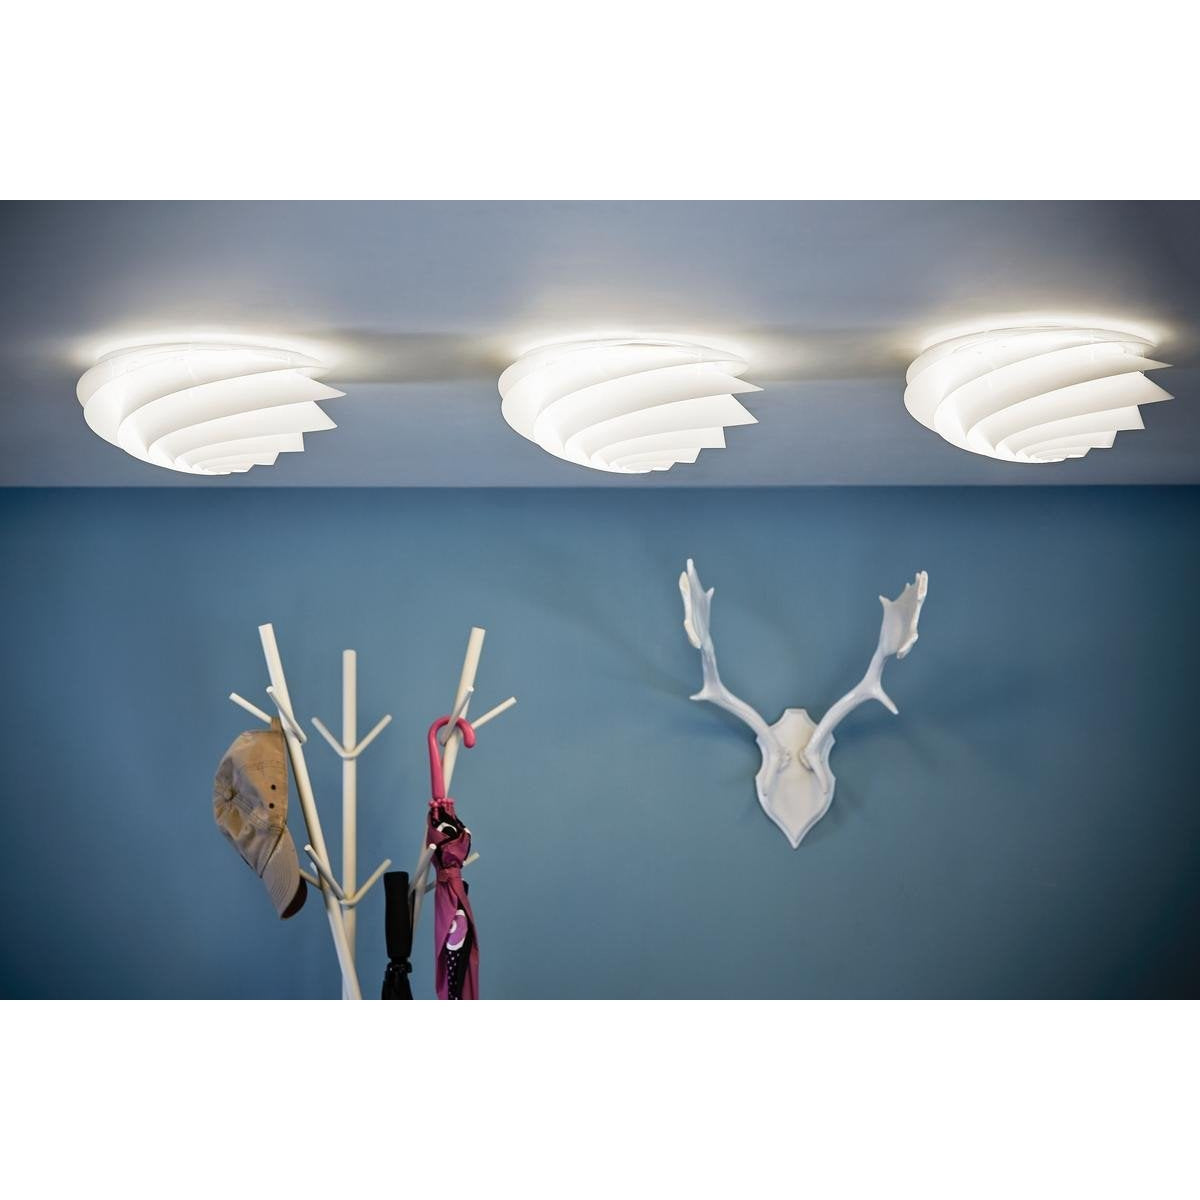 Le Klint Swirl Wall/loftslampe, hvid Ø 75 cm